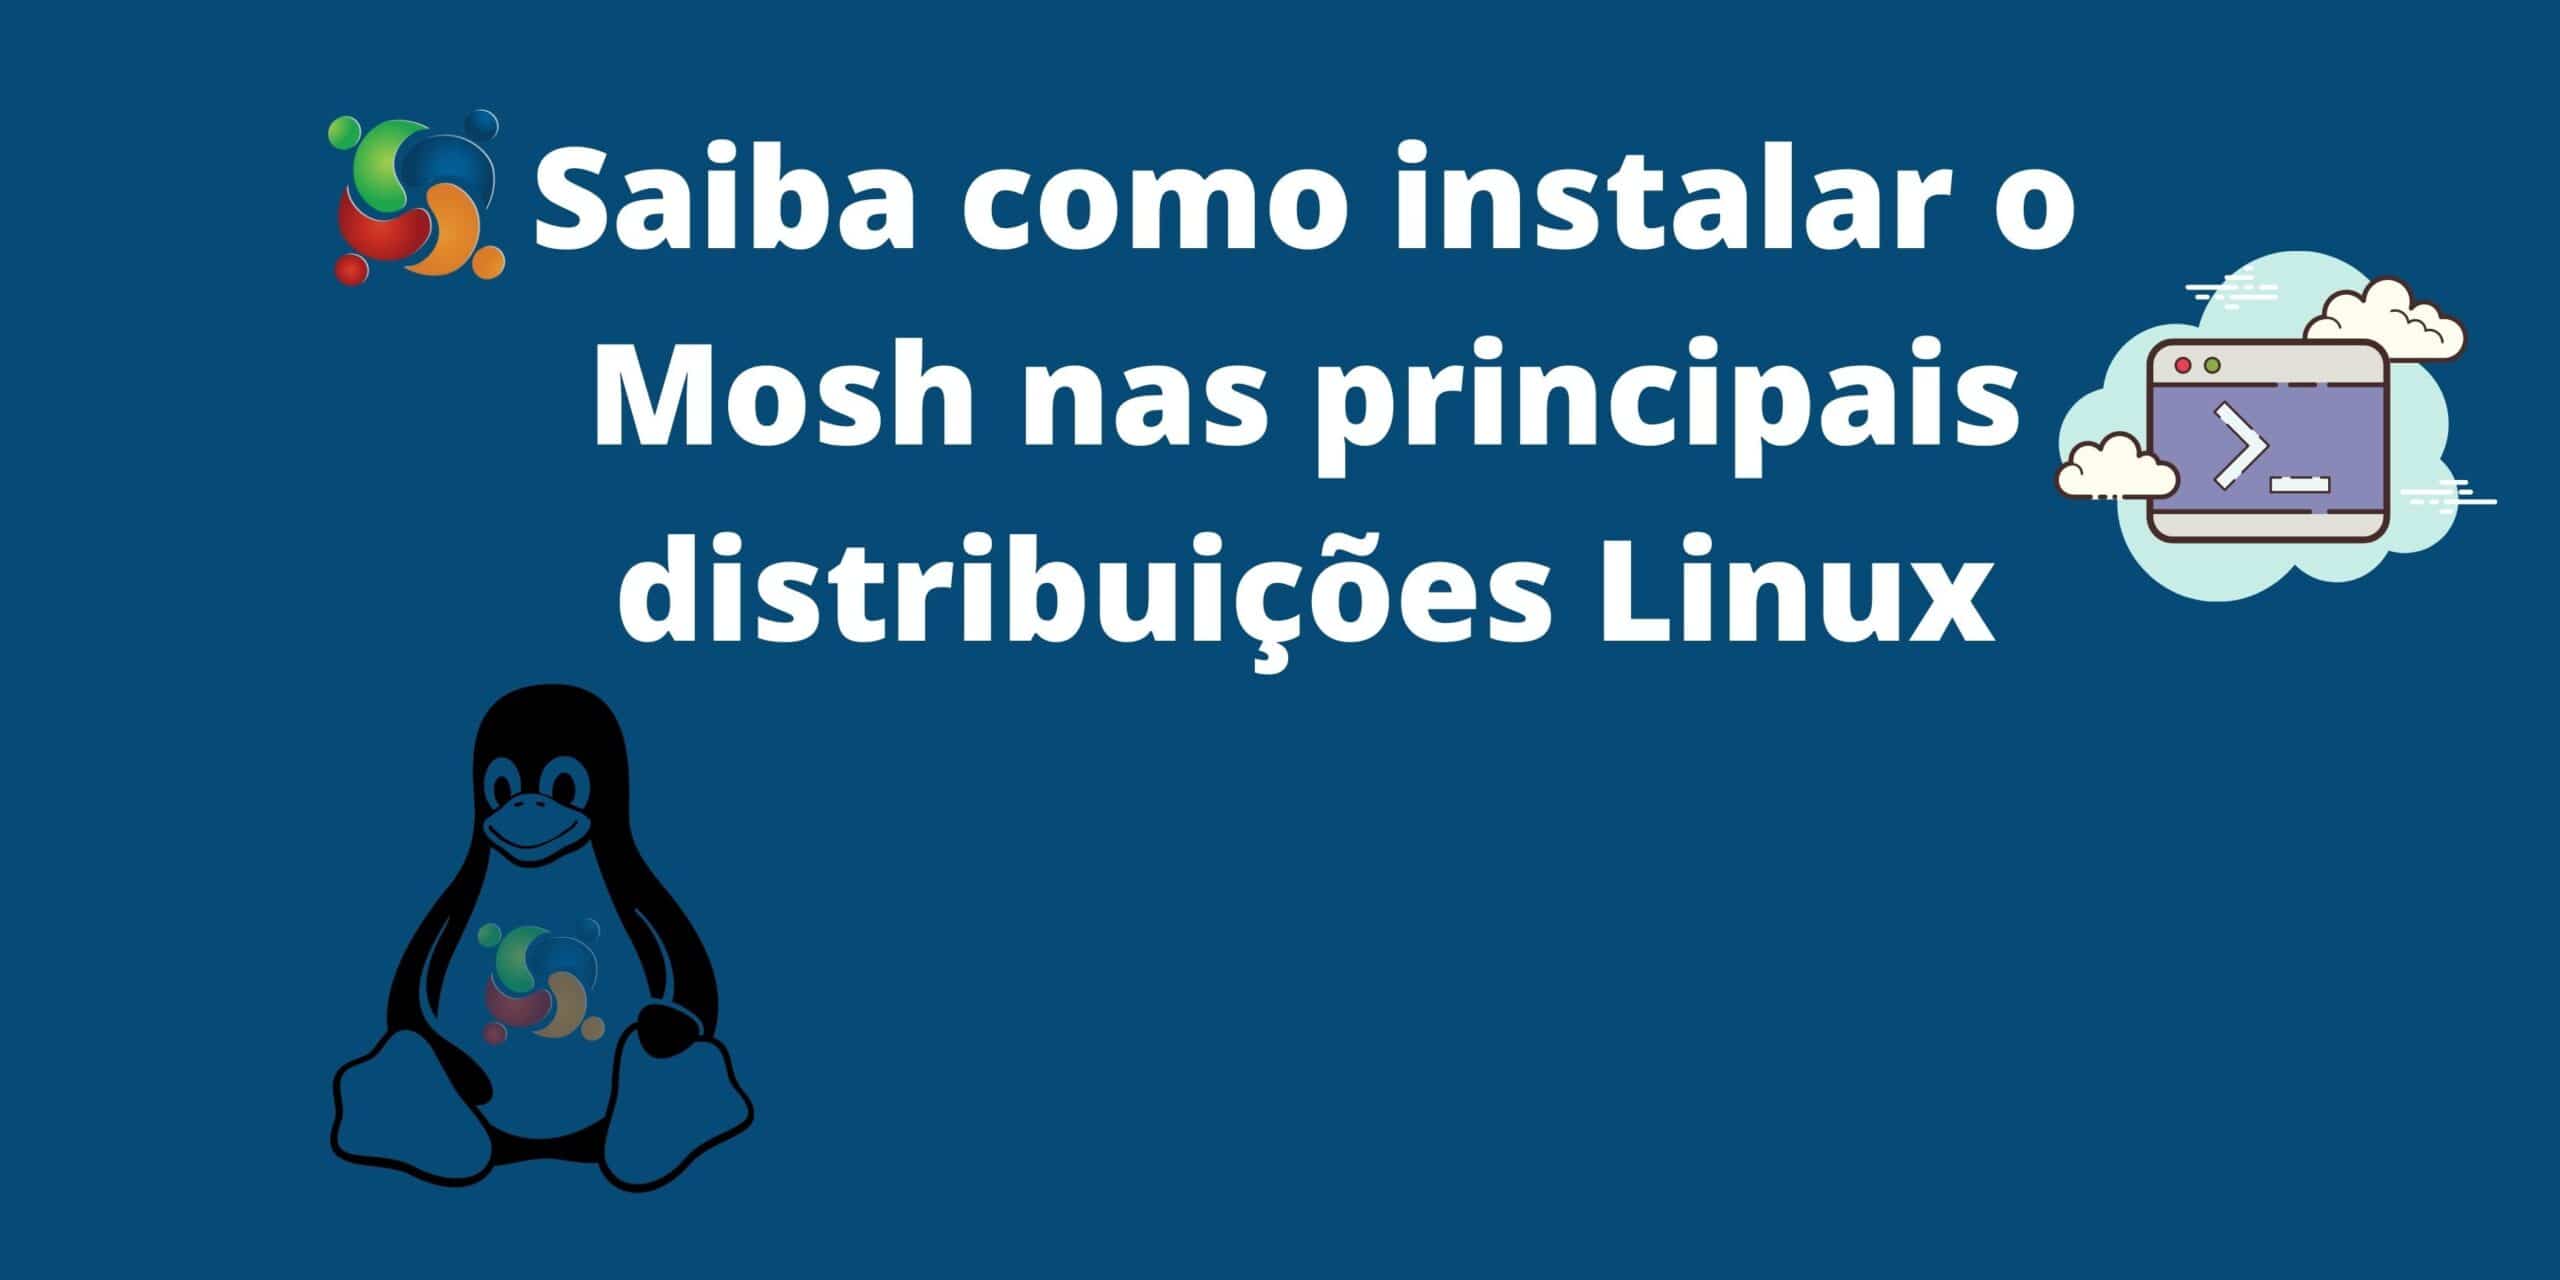 saiba-como-instalar-o-mosh-mobile-shell-no-ubuntu-arch-linux-fedora-opensuse-uma-alternativa-para-acesso-remoto-ssh